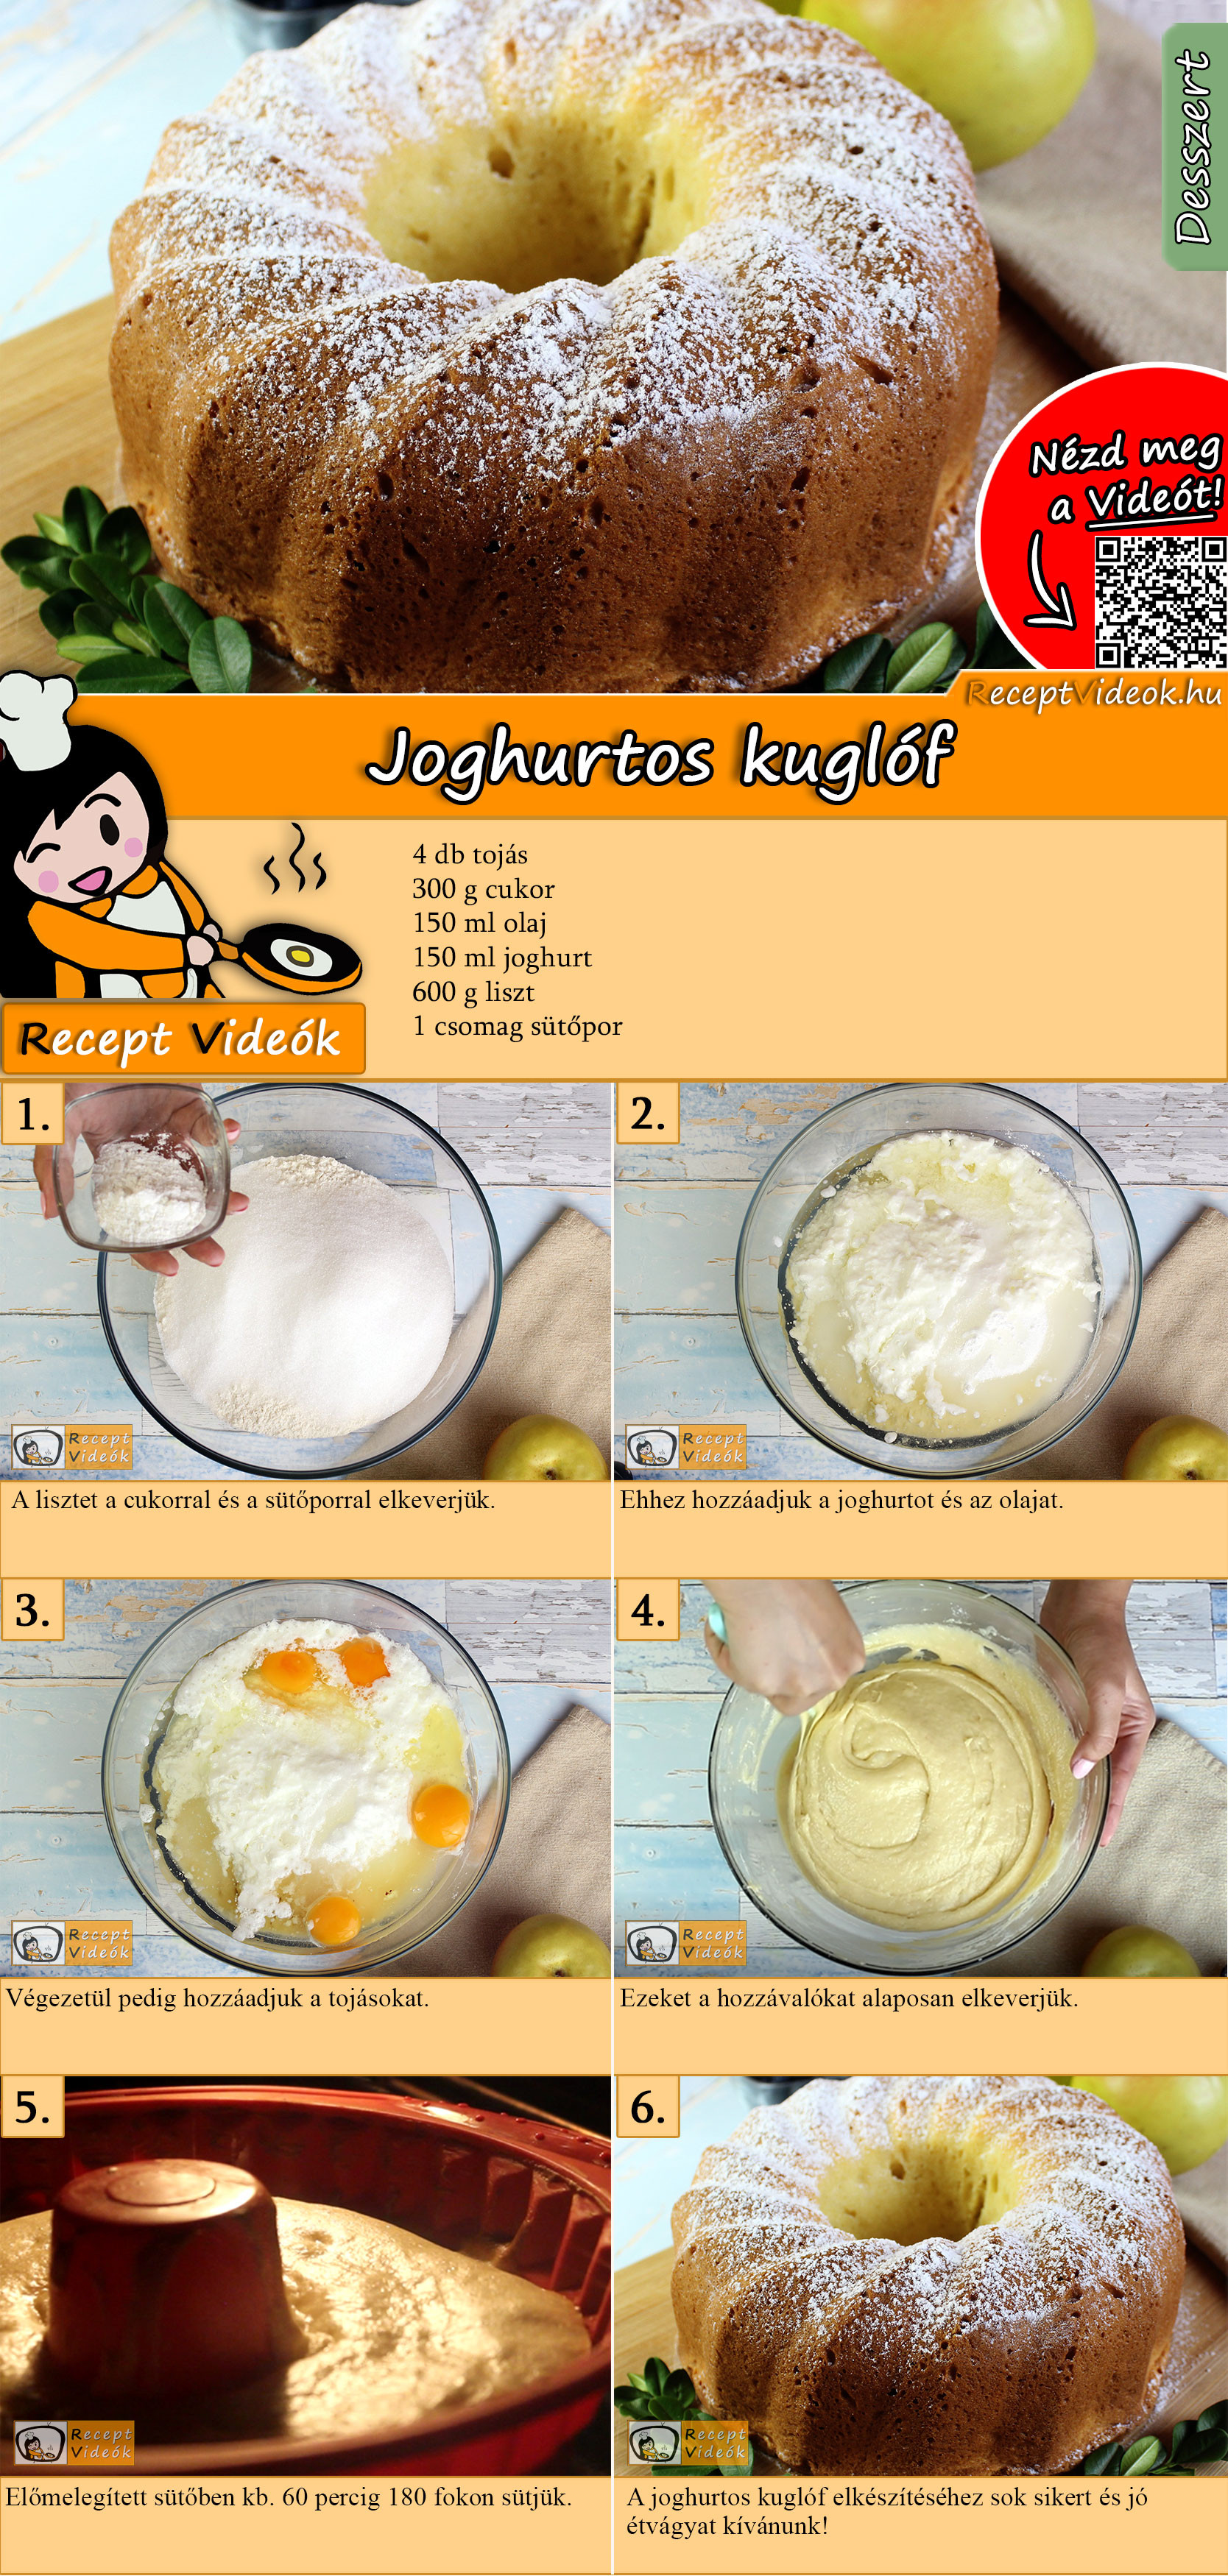 Joghurtos kuglóf recept elkészítése videóval